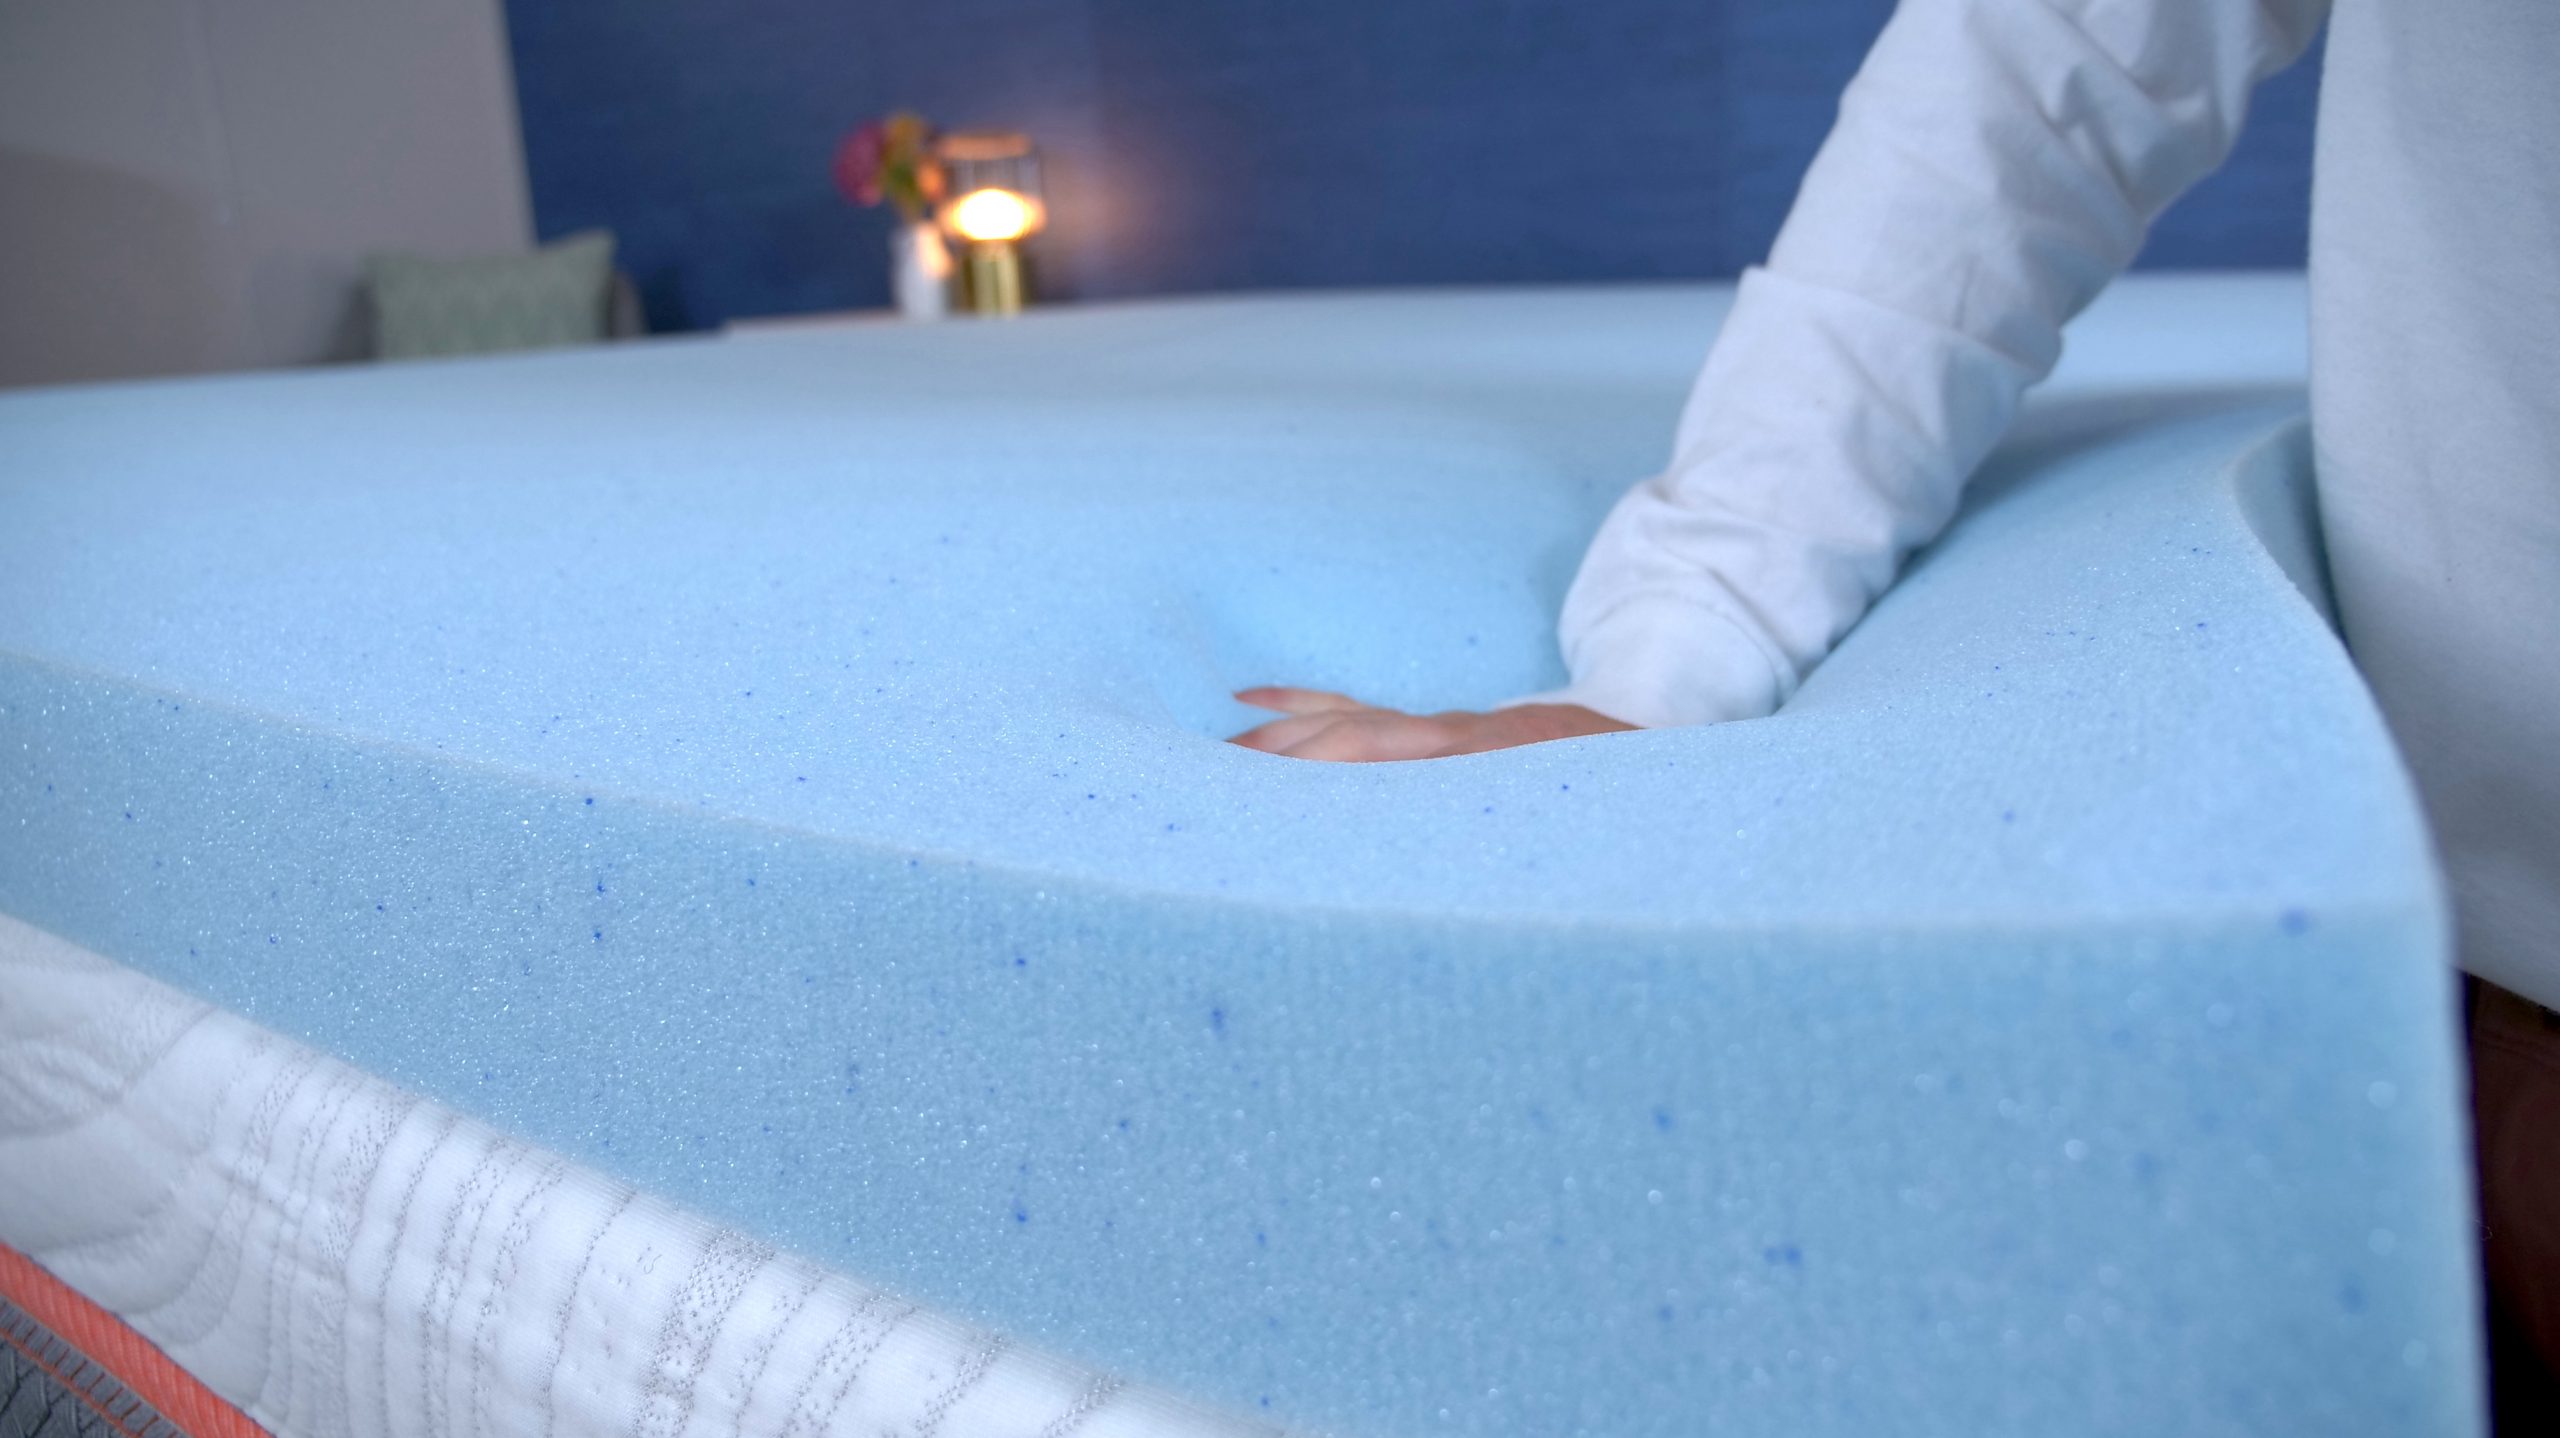 4 lb density gel memory foam mattress topper